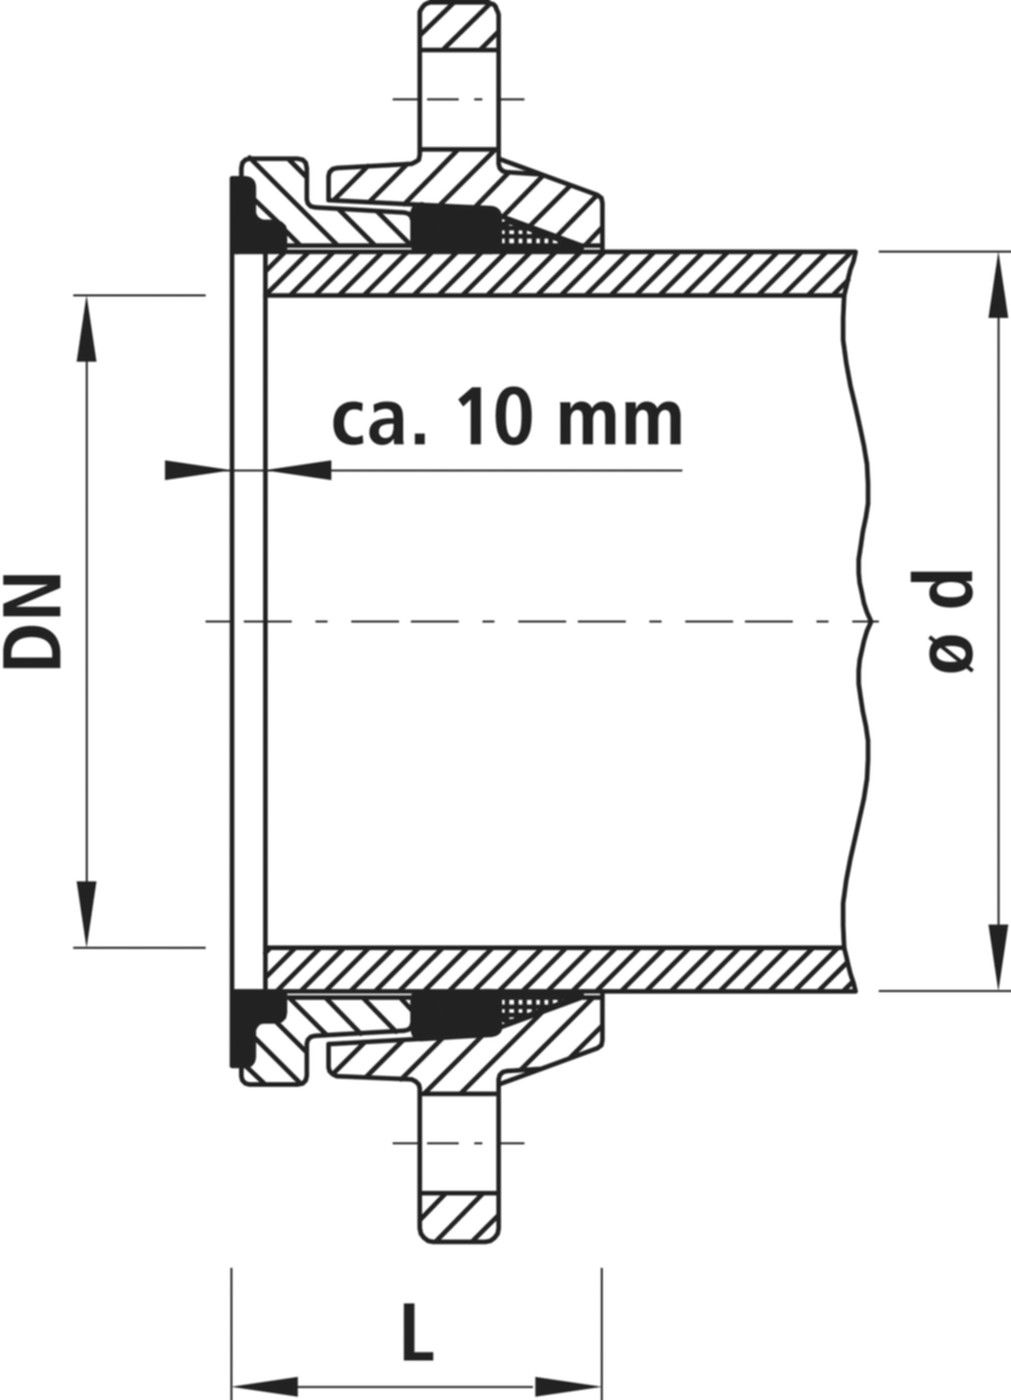 Zweikammer-Flansch für Stahlrohre 7150 schubsicher, PN 10/16 DN 65 / AD 76mm - Hawle Flanschformstücke